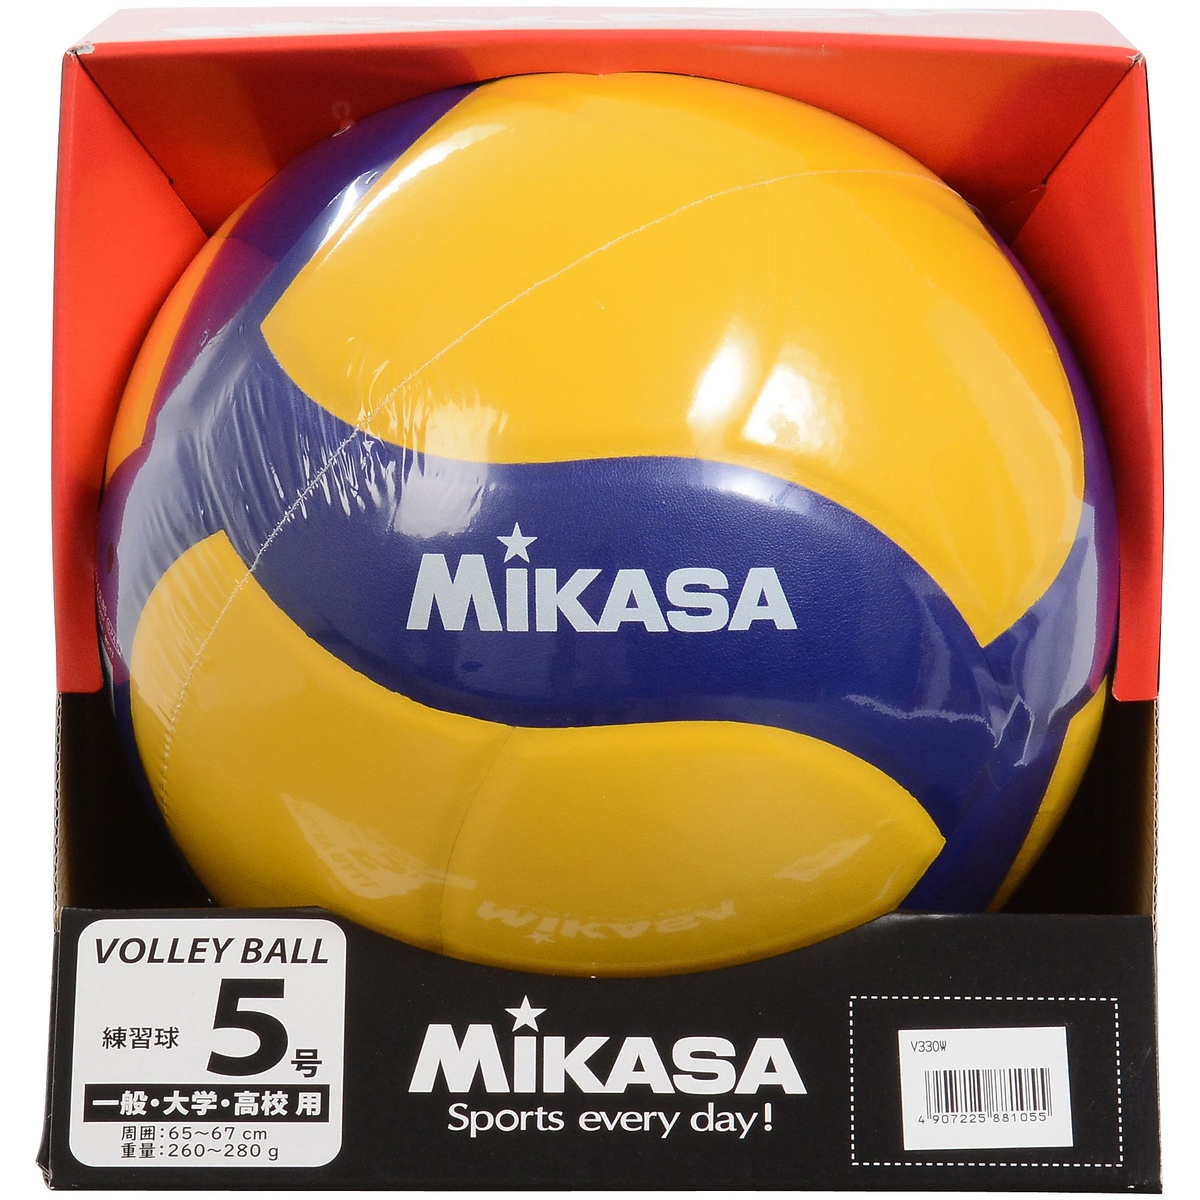 楽天市場 Mikasa ミカサ バレー5号 練習球 黄 青 バレーボール 5号ボール 5 V330w スポーツオーソリティ 楽天市場店